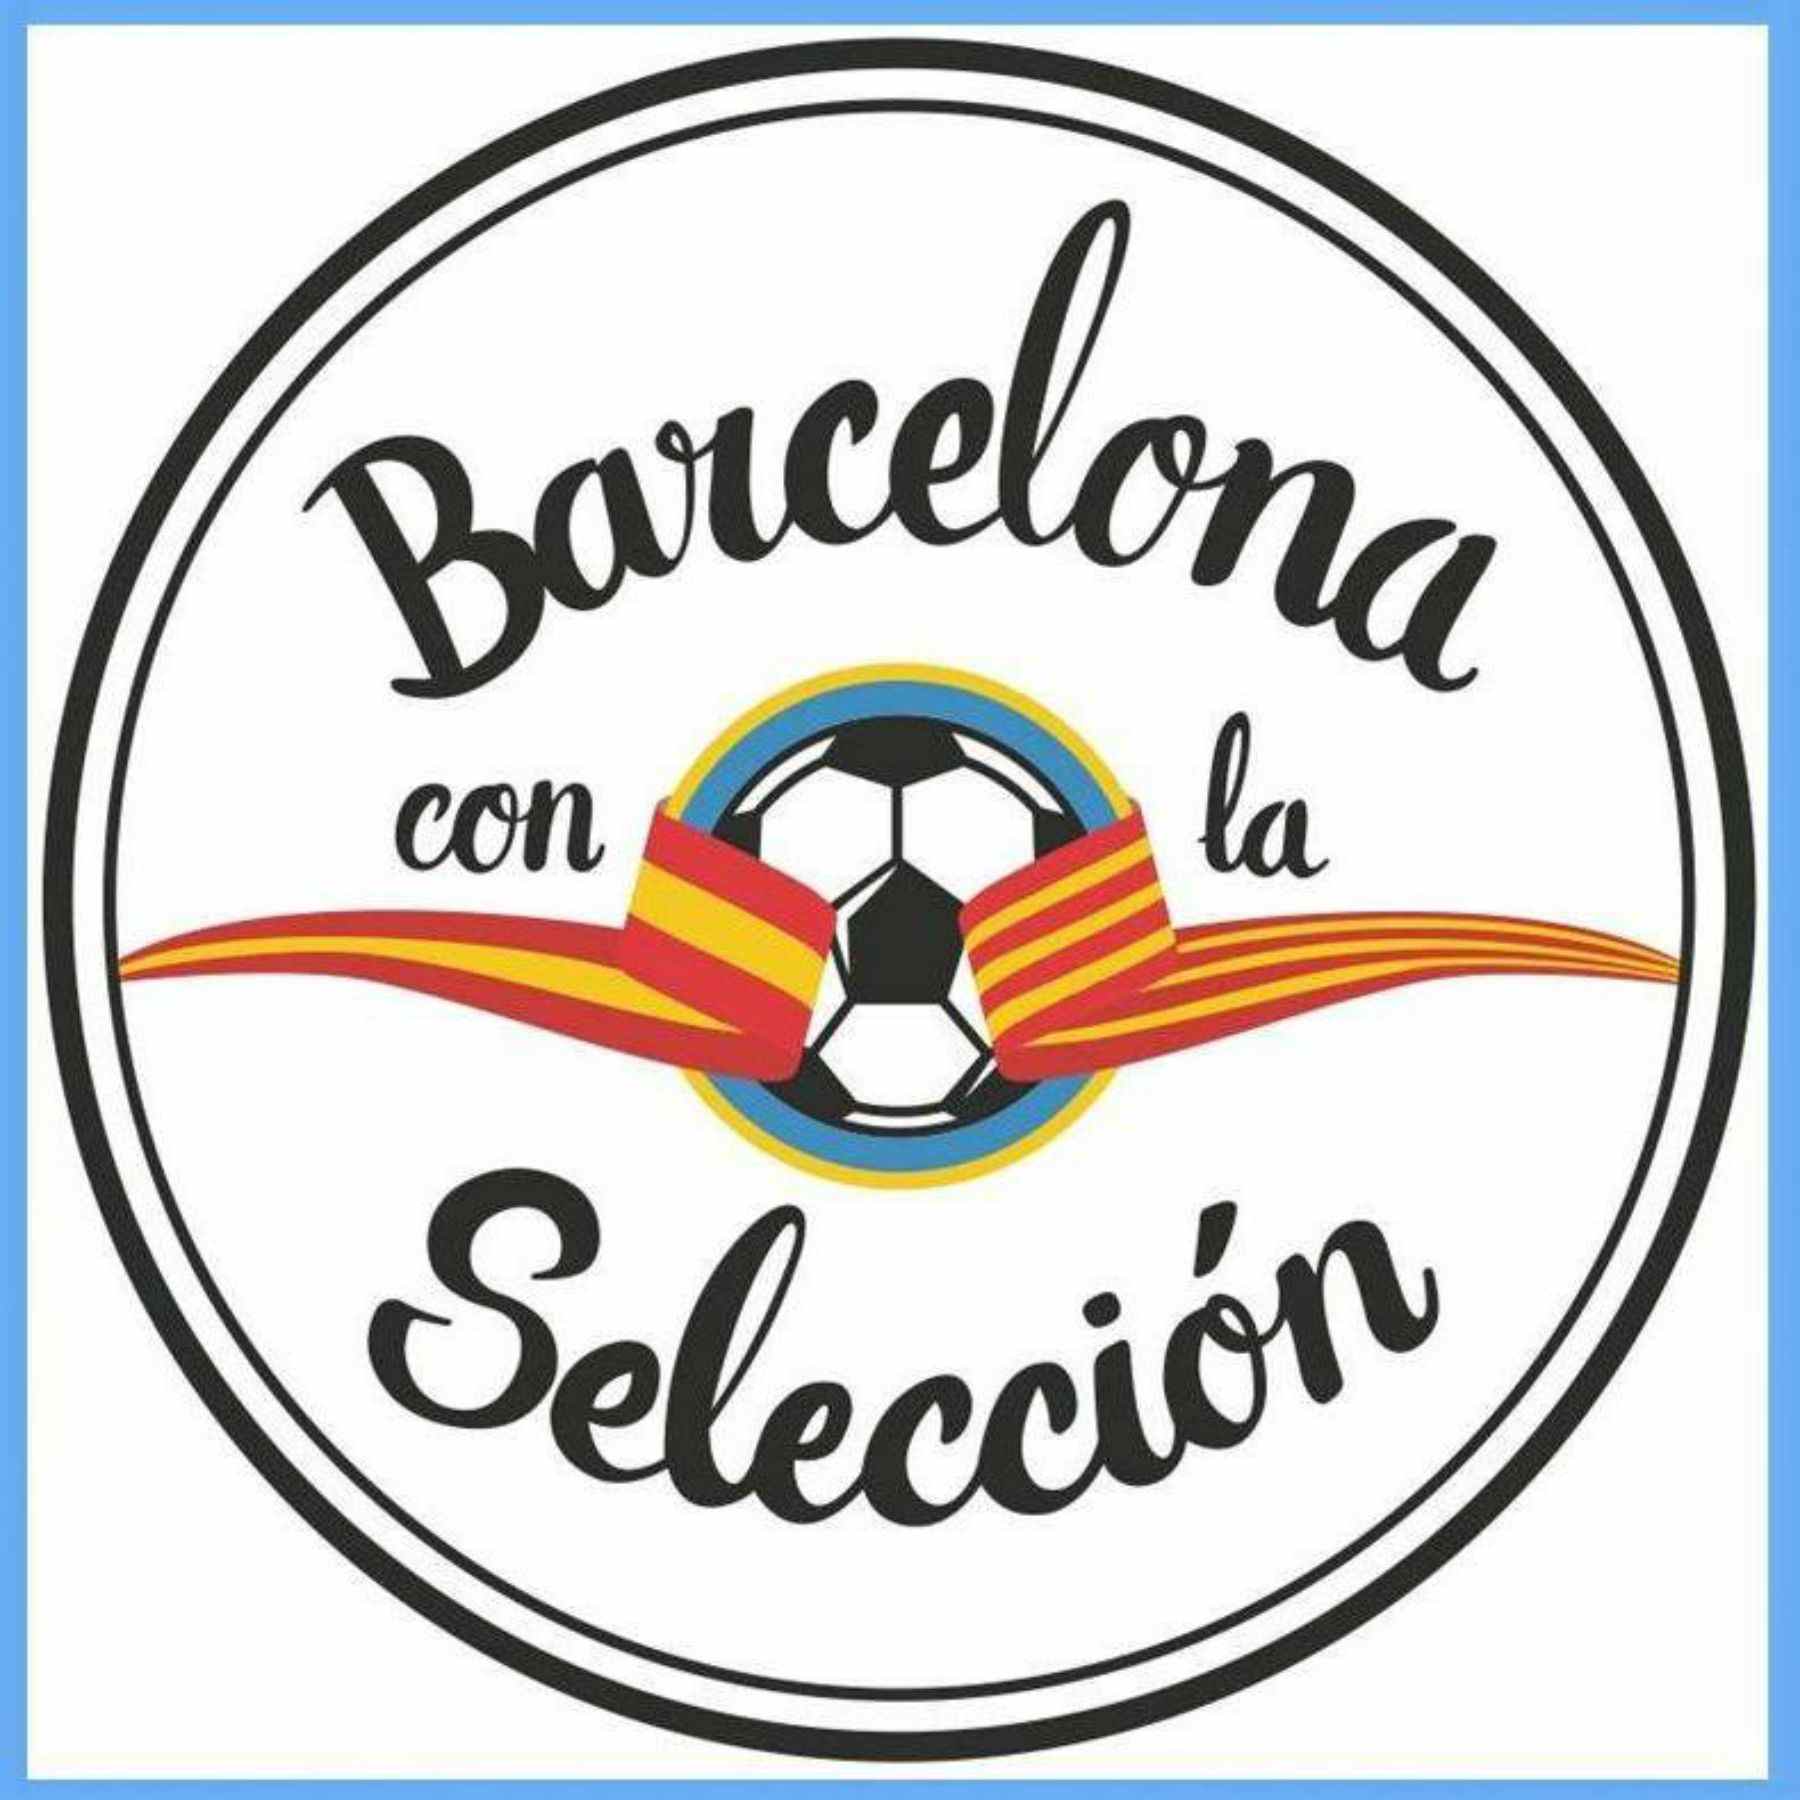 Colau torna a multar 'Barcelona con la Selección'